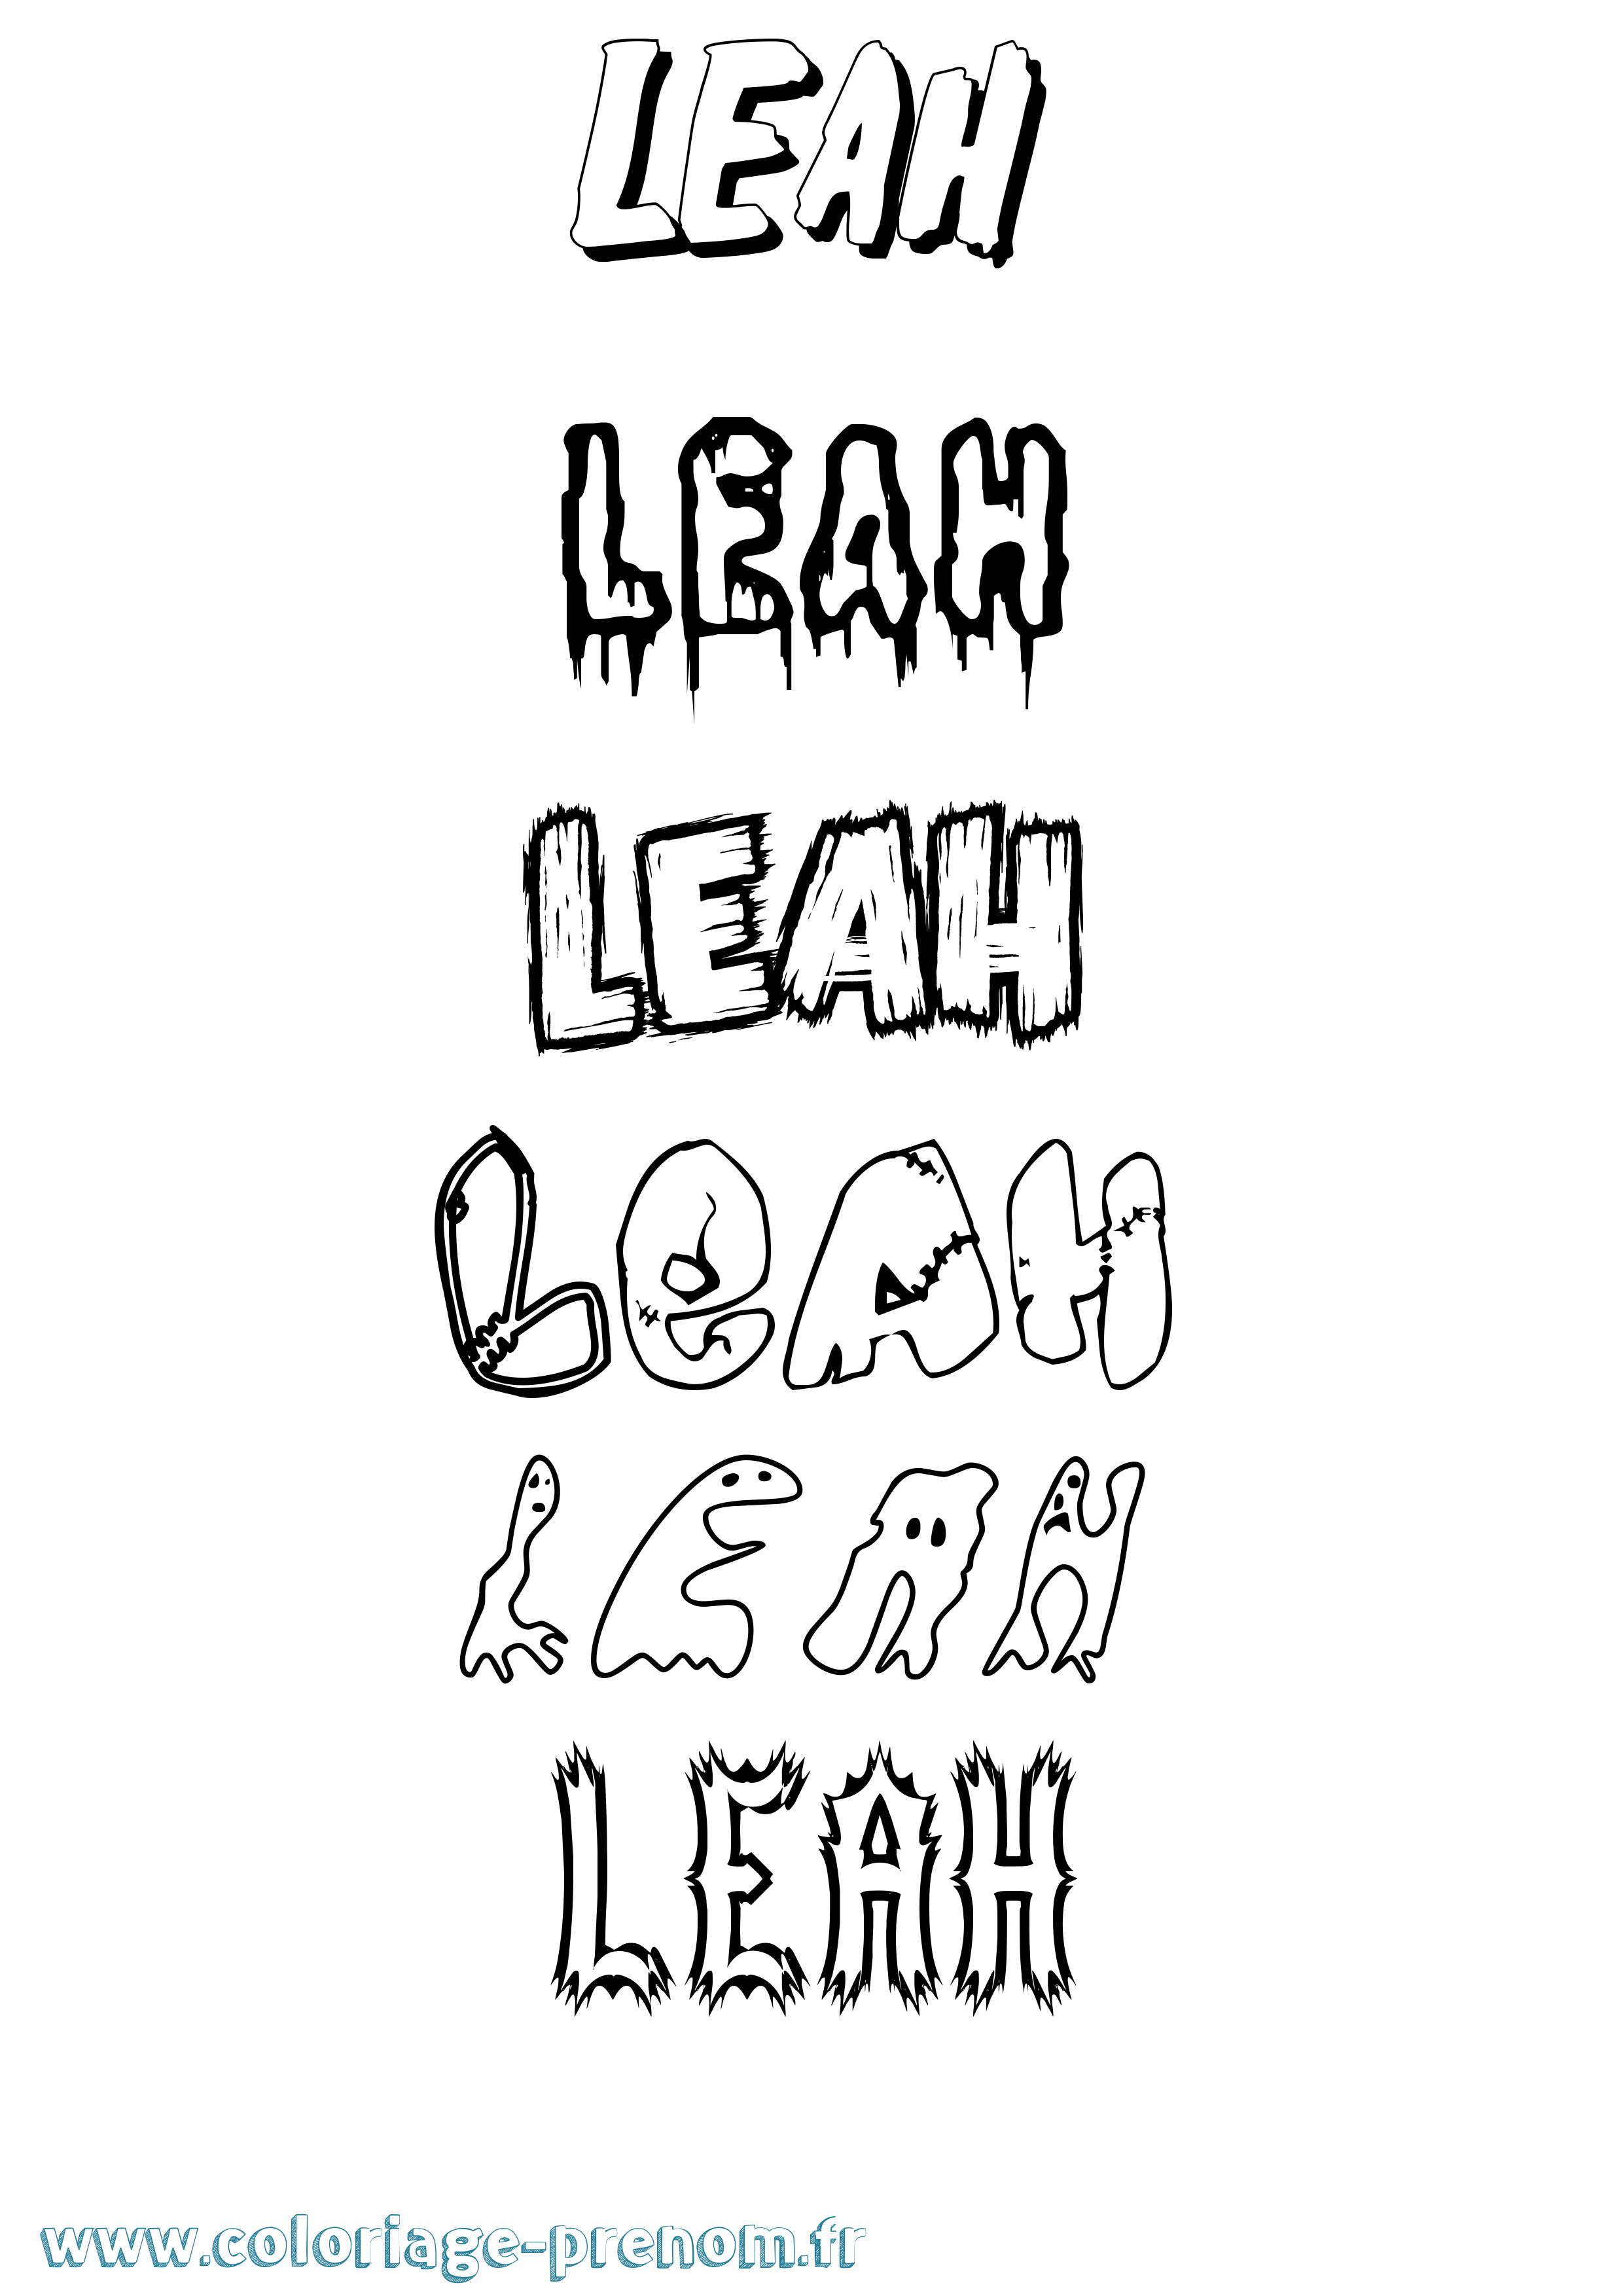 Coloriage prénom Leah Frisson